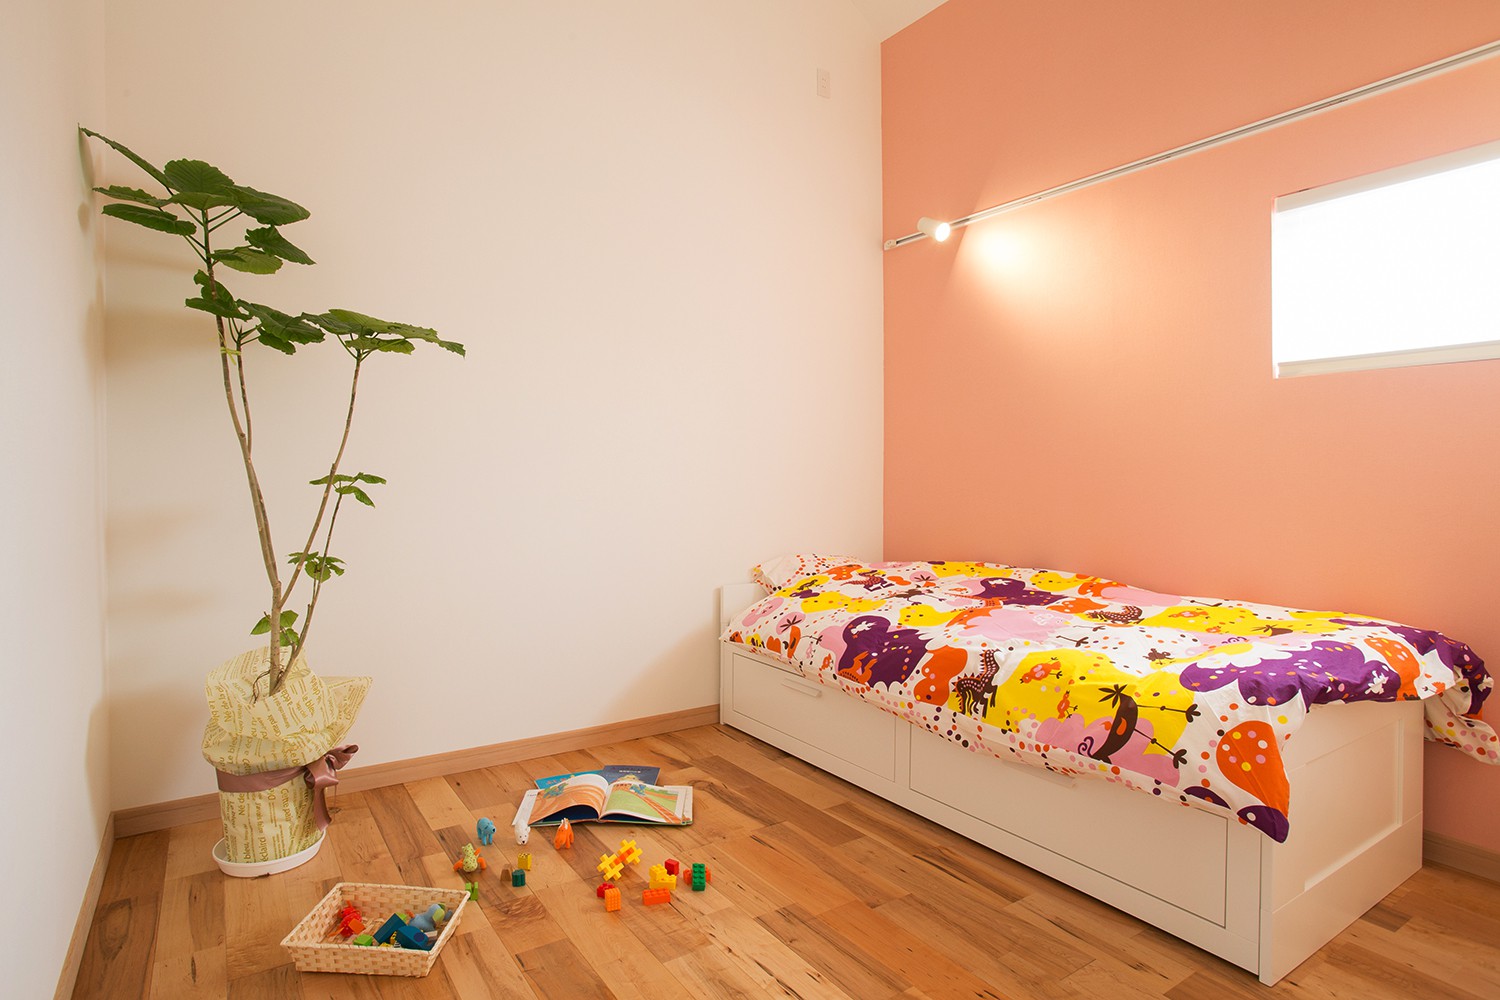 北欧スタイルのおしゃれな子供部屋のインテリア画像 21年9月 Houzz ハウズ